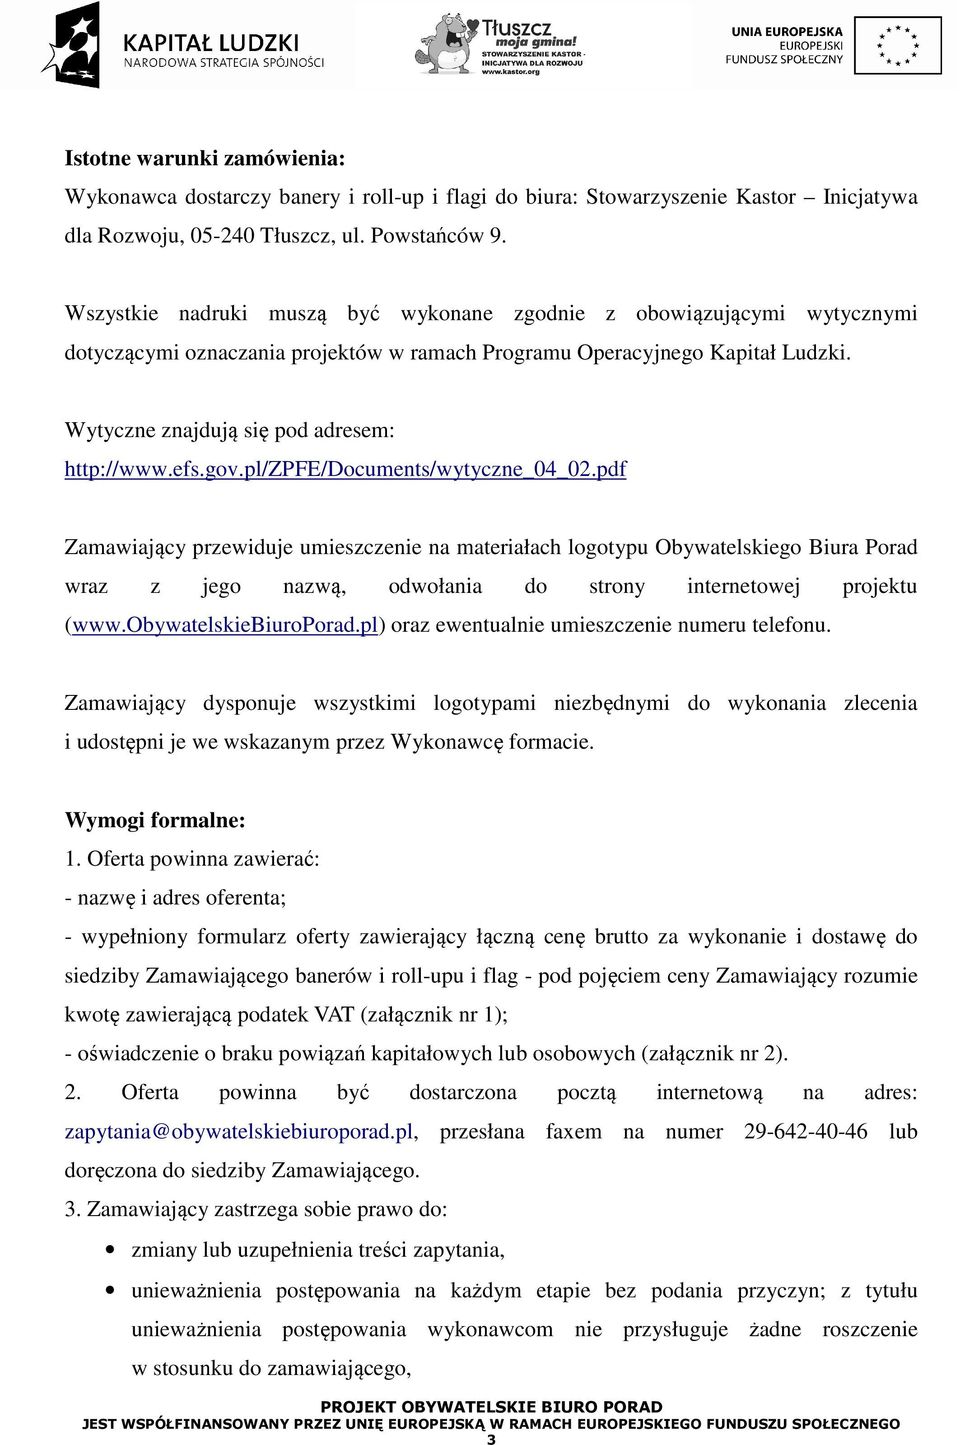 efs.gov.pl/zpfe/documents/wytyczne_04_02.pdf Zamawiający przewiduje umieszczenie na materiałach logotypu Obywatelskiego Biura Porad wraz z jego nazwą, odwołania do strony internetowej projektu (www.